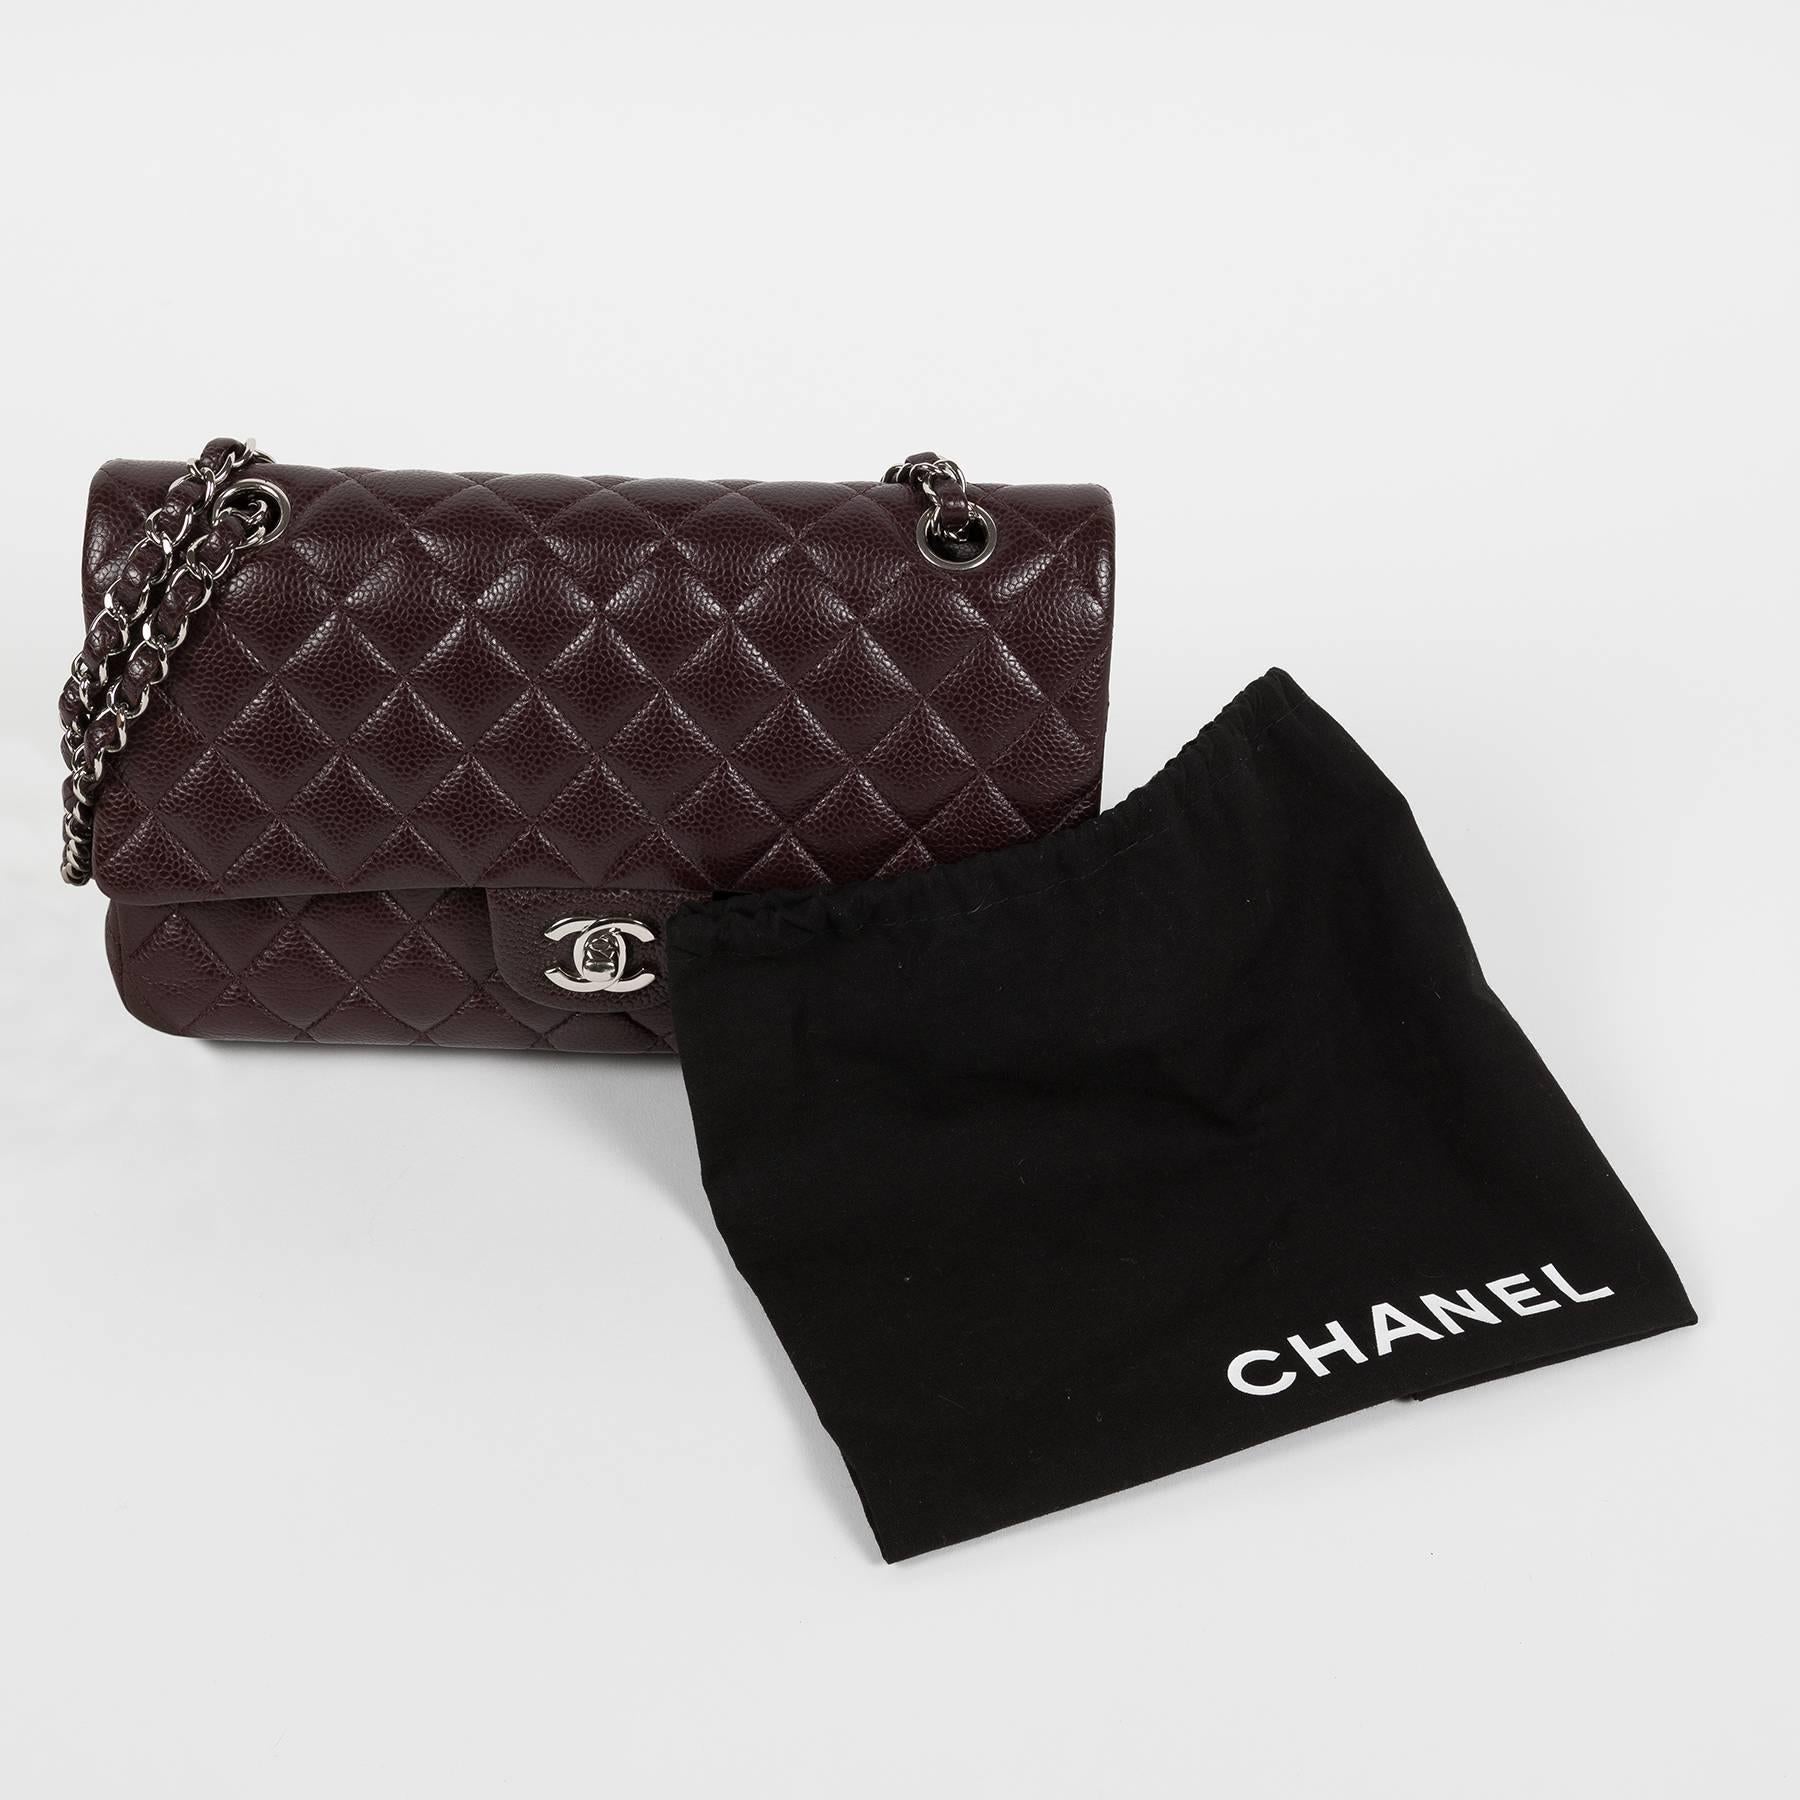 2014 Chanel 2.55 Bordeaux Caviar Flap Bag For Sale 1